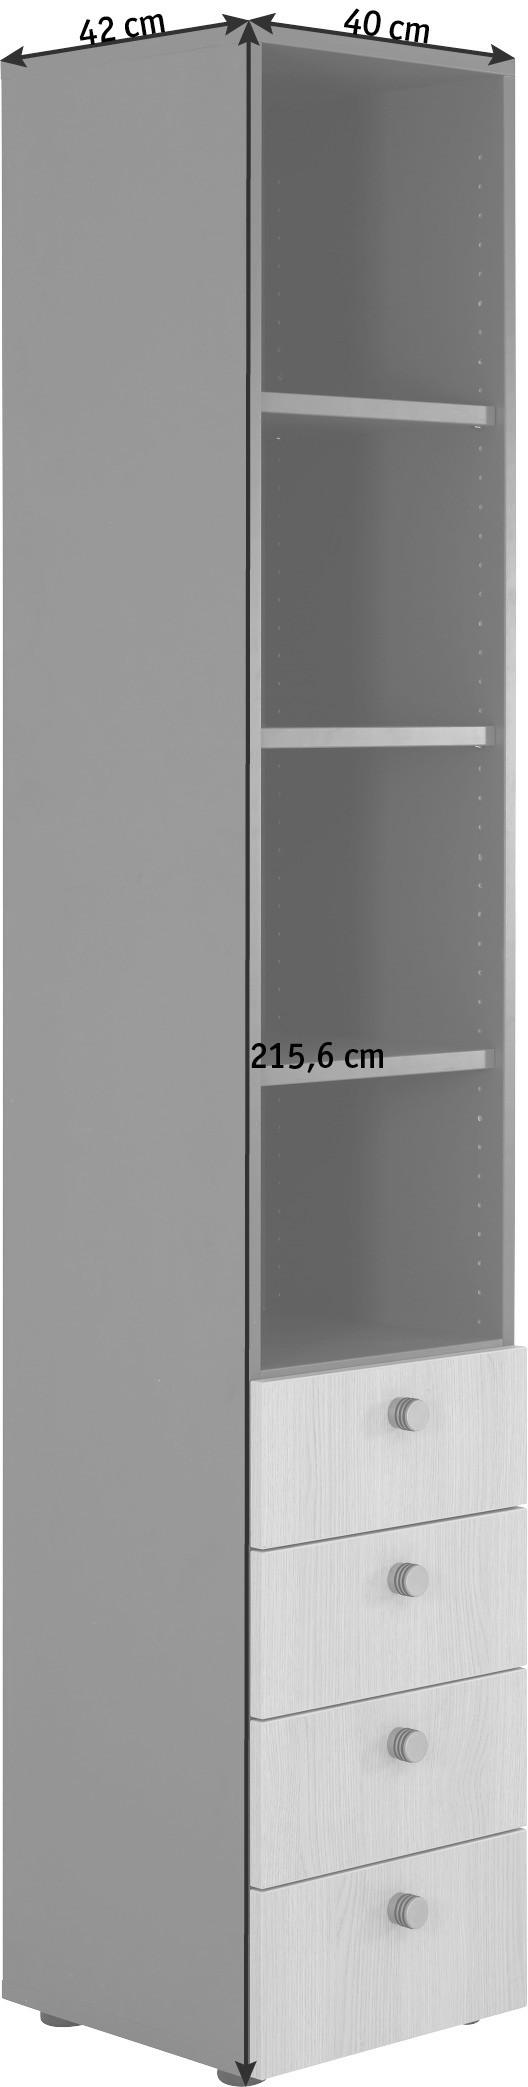 REGAL Silberfarben, Buchefarben  - Silberfarben/Buchefarben, KONVENTIONELL, Holzwerkstoff/Metall (40/215,6/42cm)